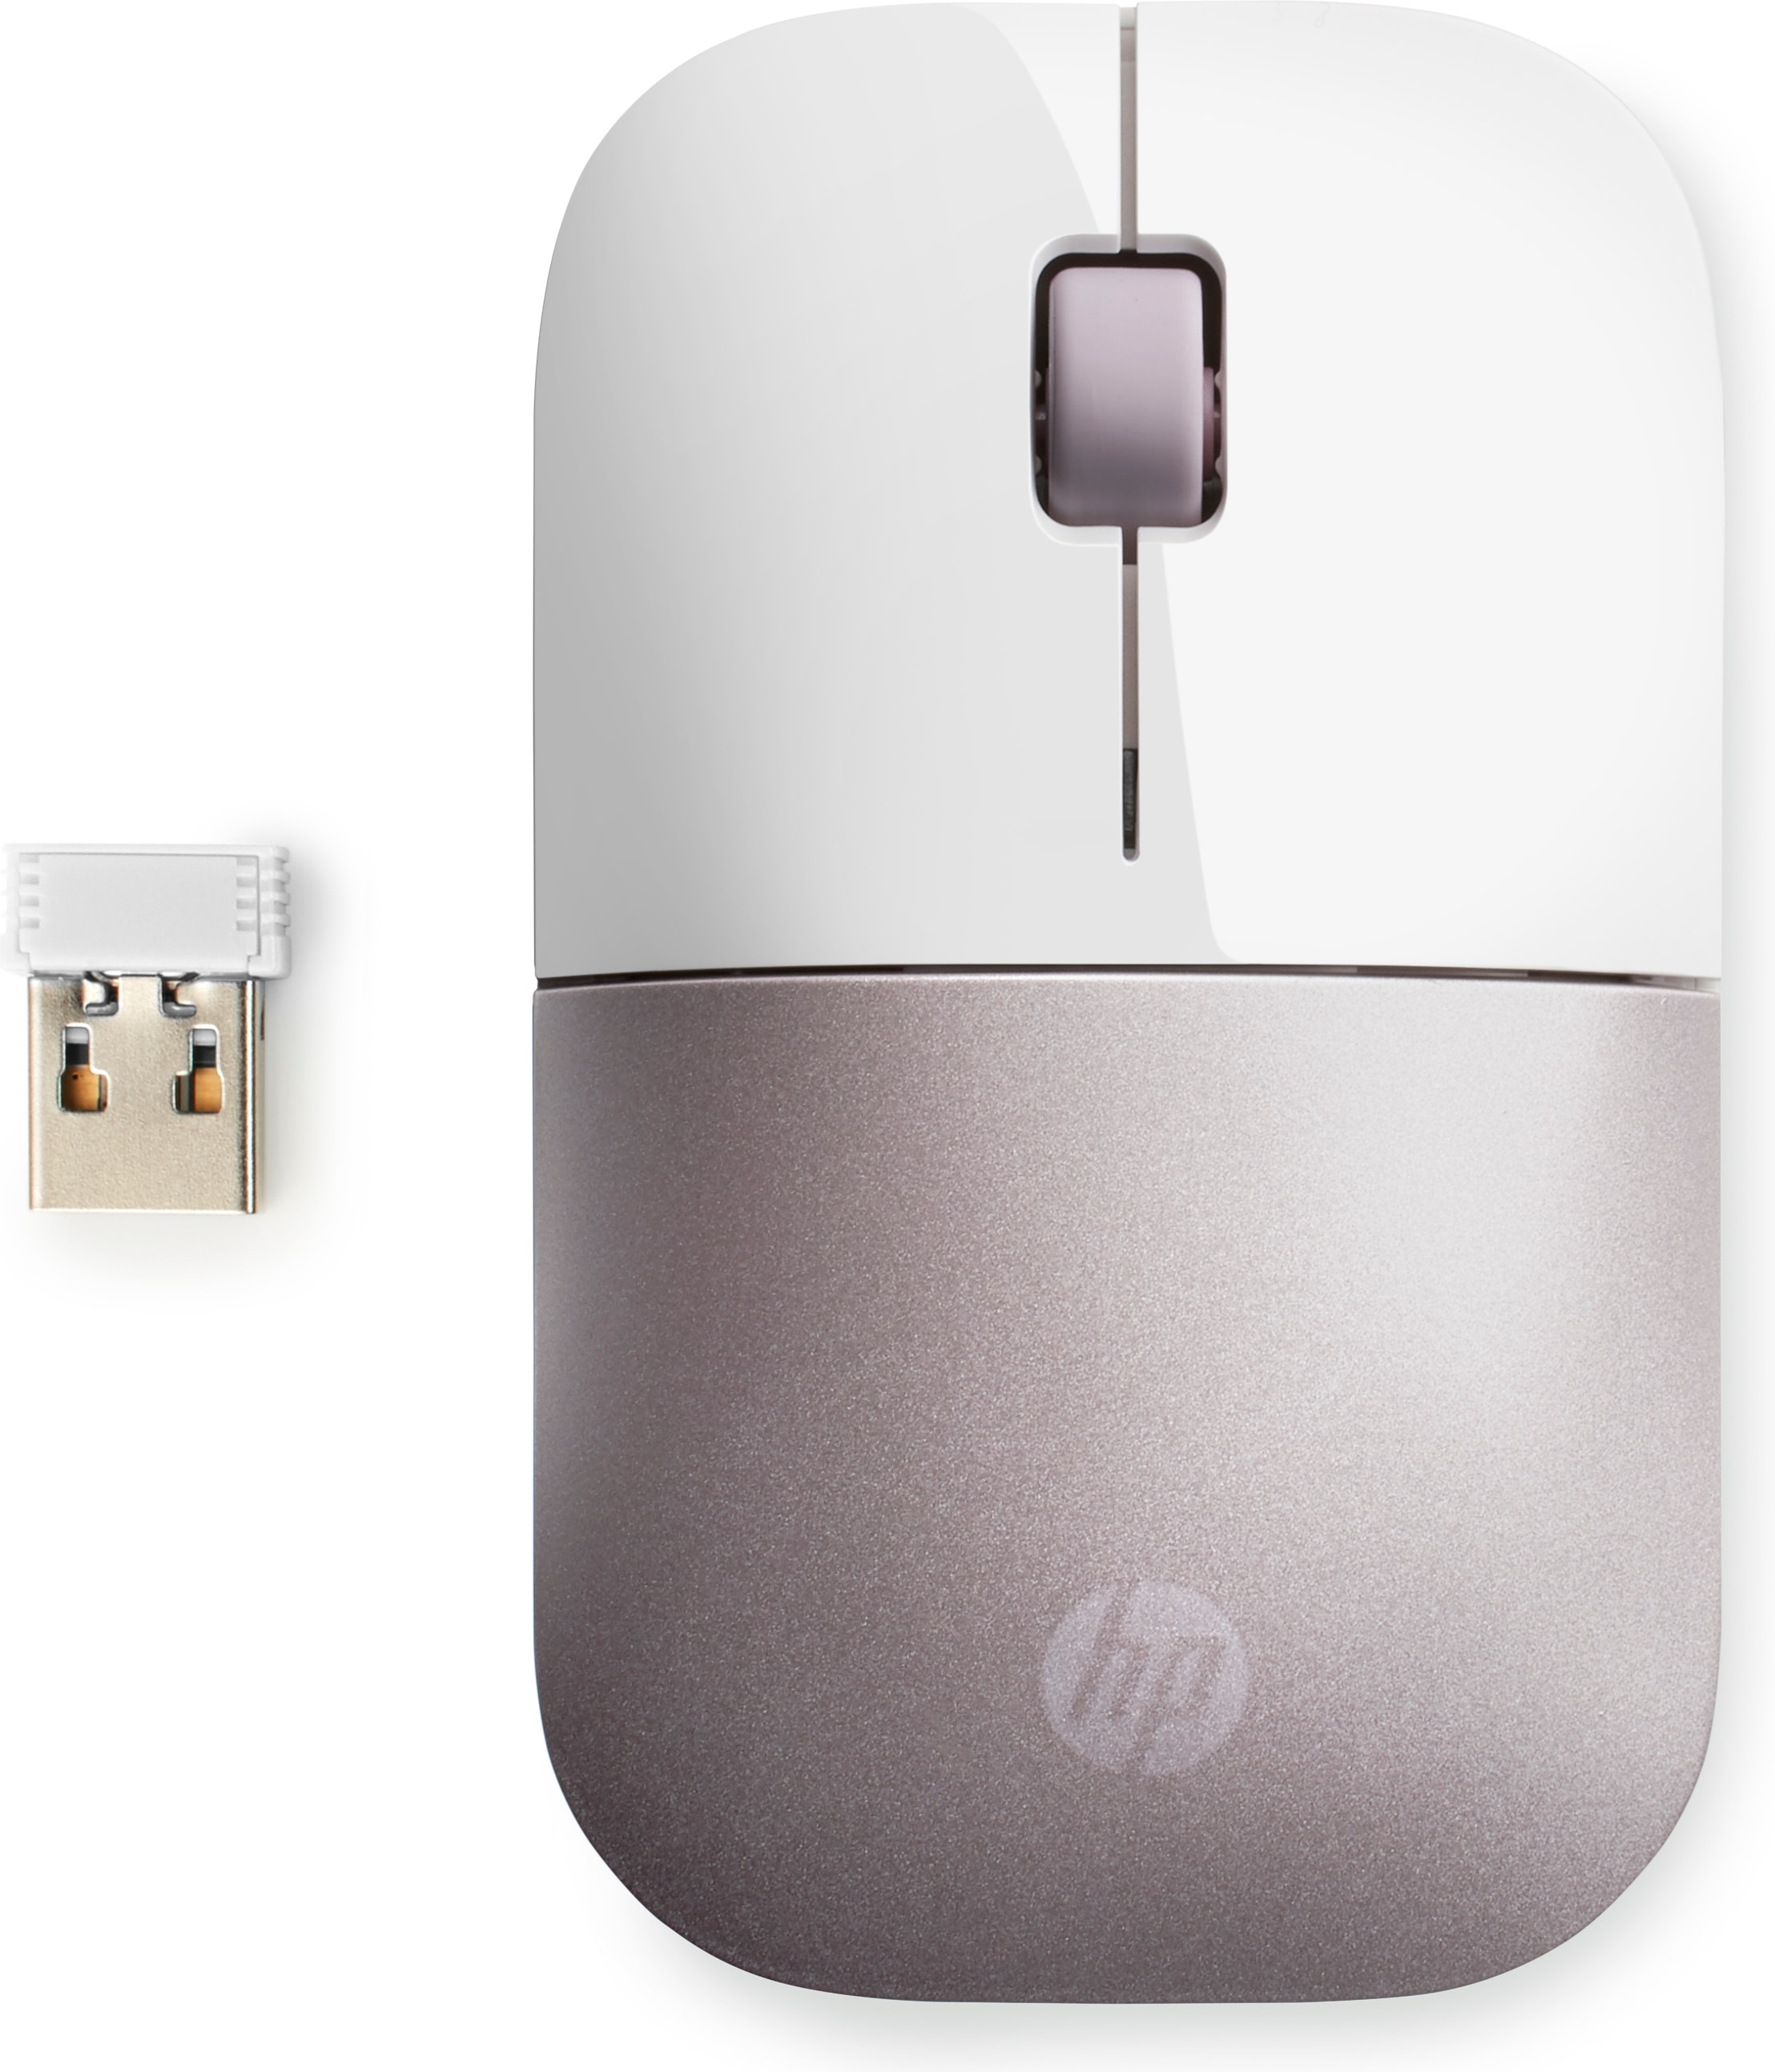 HP Z3700 - Beidhändig - RF Wireless - 1200 DPI - Pink - Weiß